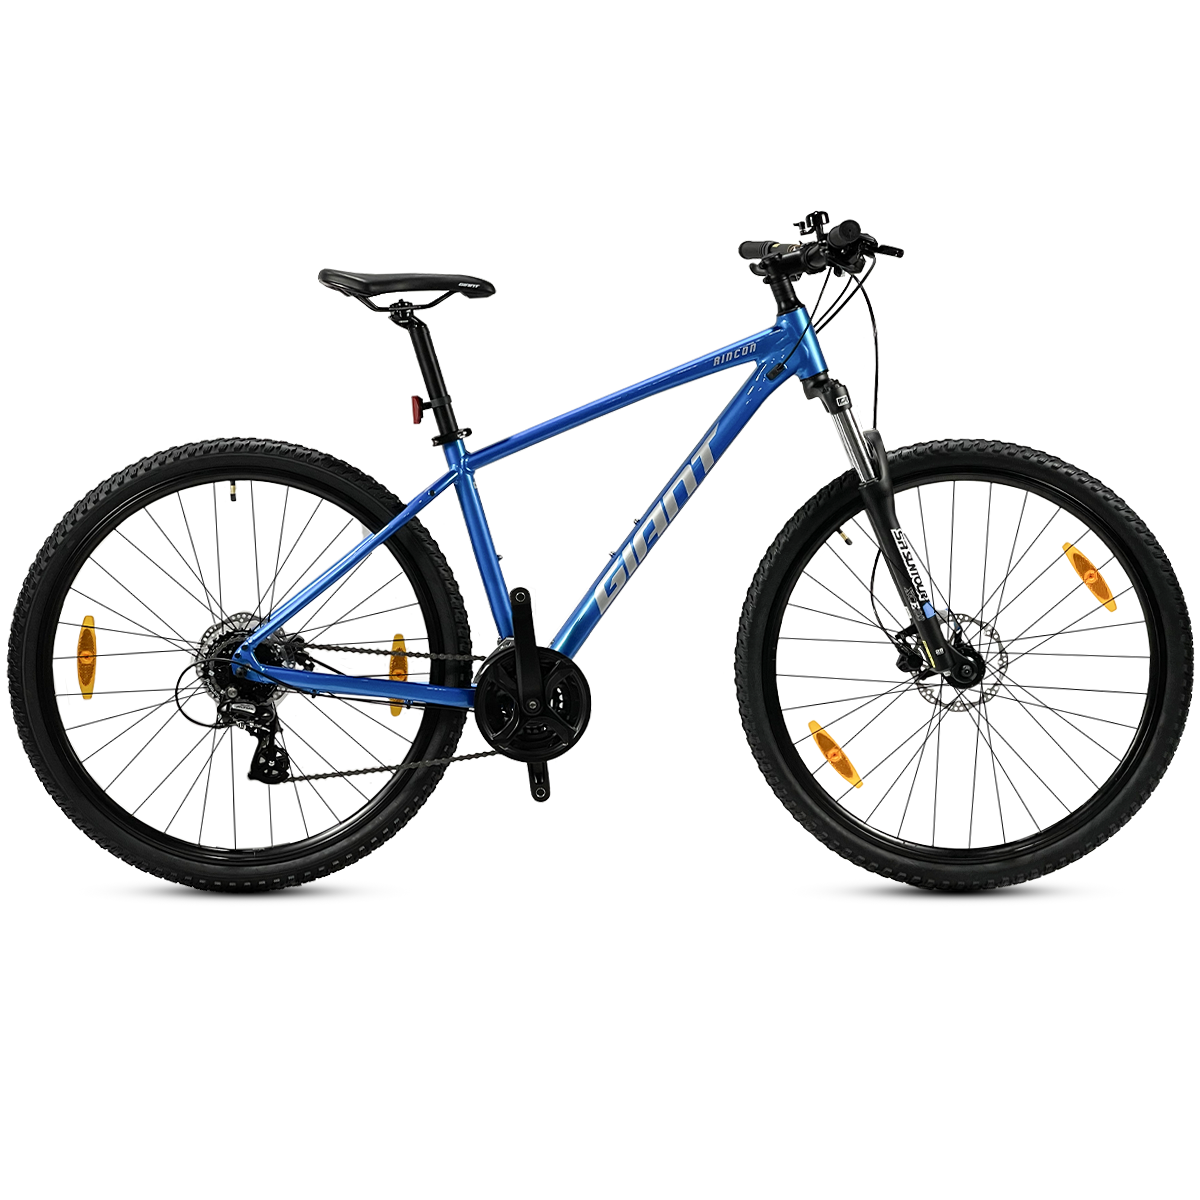 Gravel, Mountain Bike Andes R19 - Bicicleta Rodada 29, Talla S 15¨ Azul -  Bicicleta de Montaña con 24 Velocidades